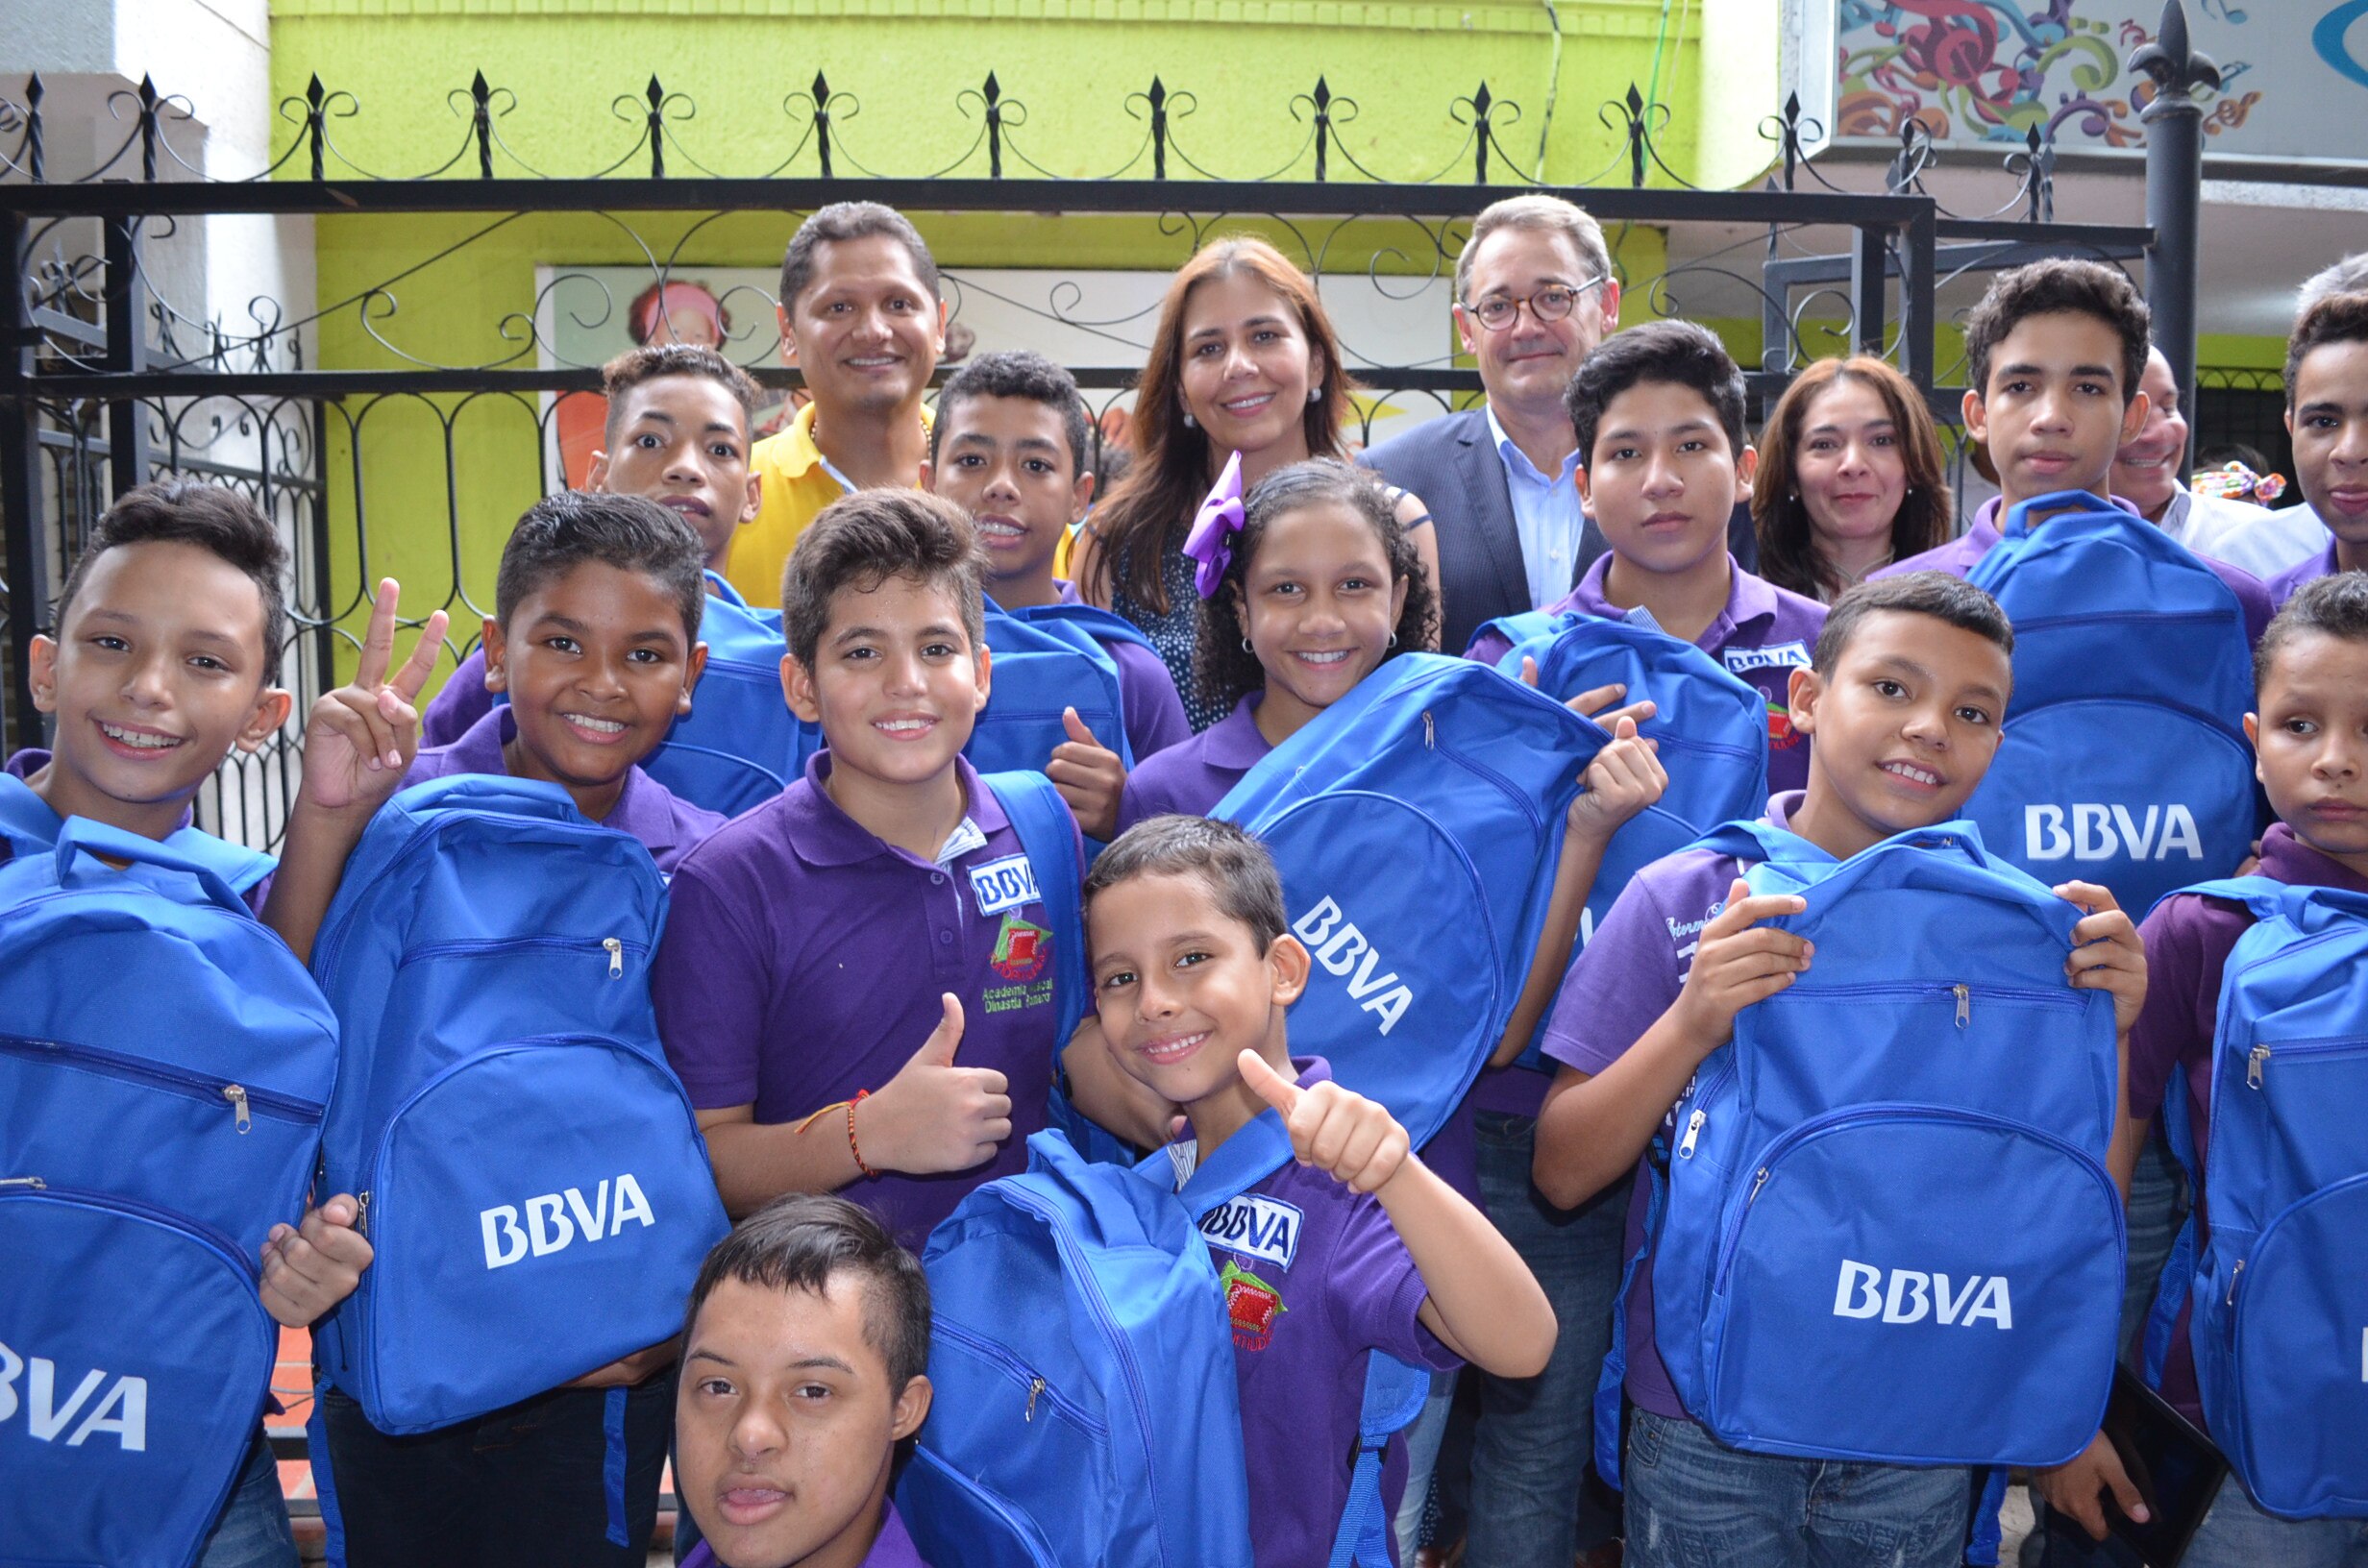 Fotografía de los niños de la escuela Dinastía Romero con los morrales de BBVA entregados por Óscar Cabrera